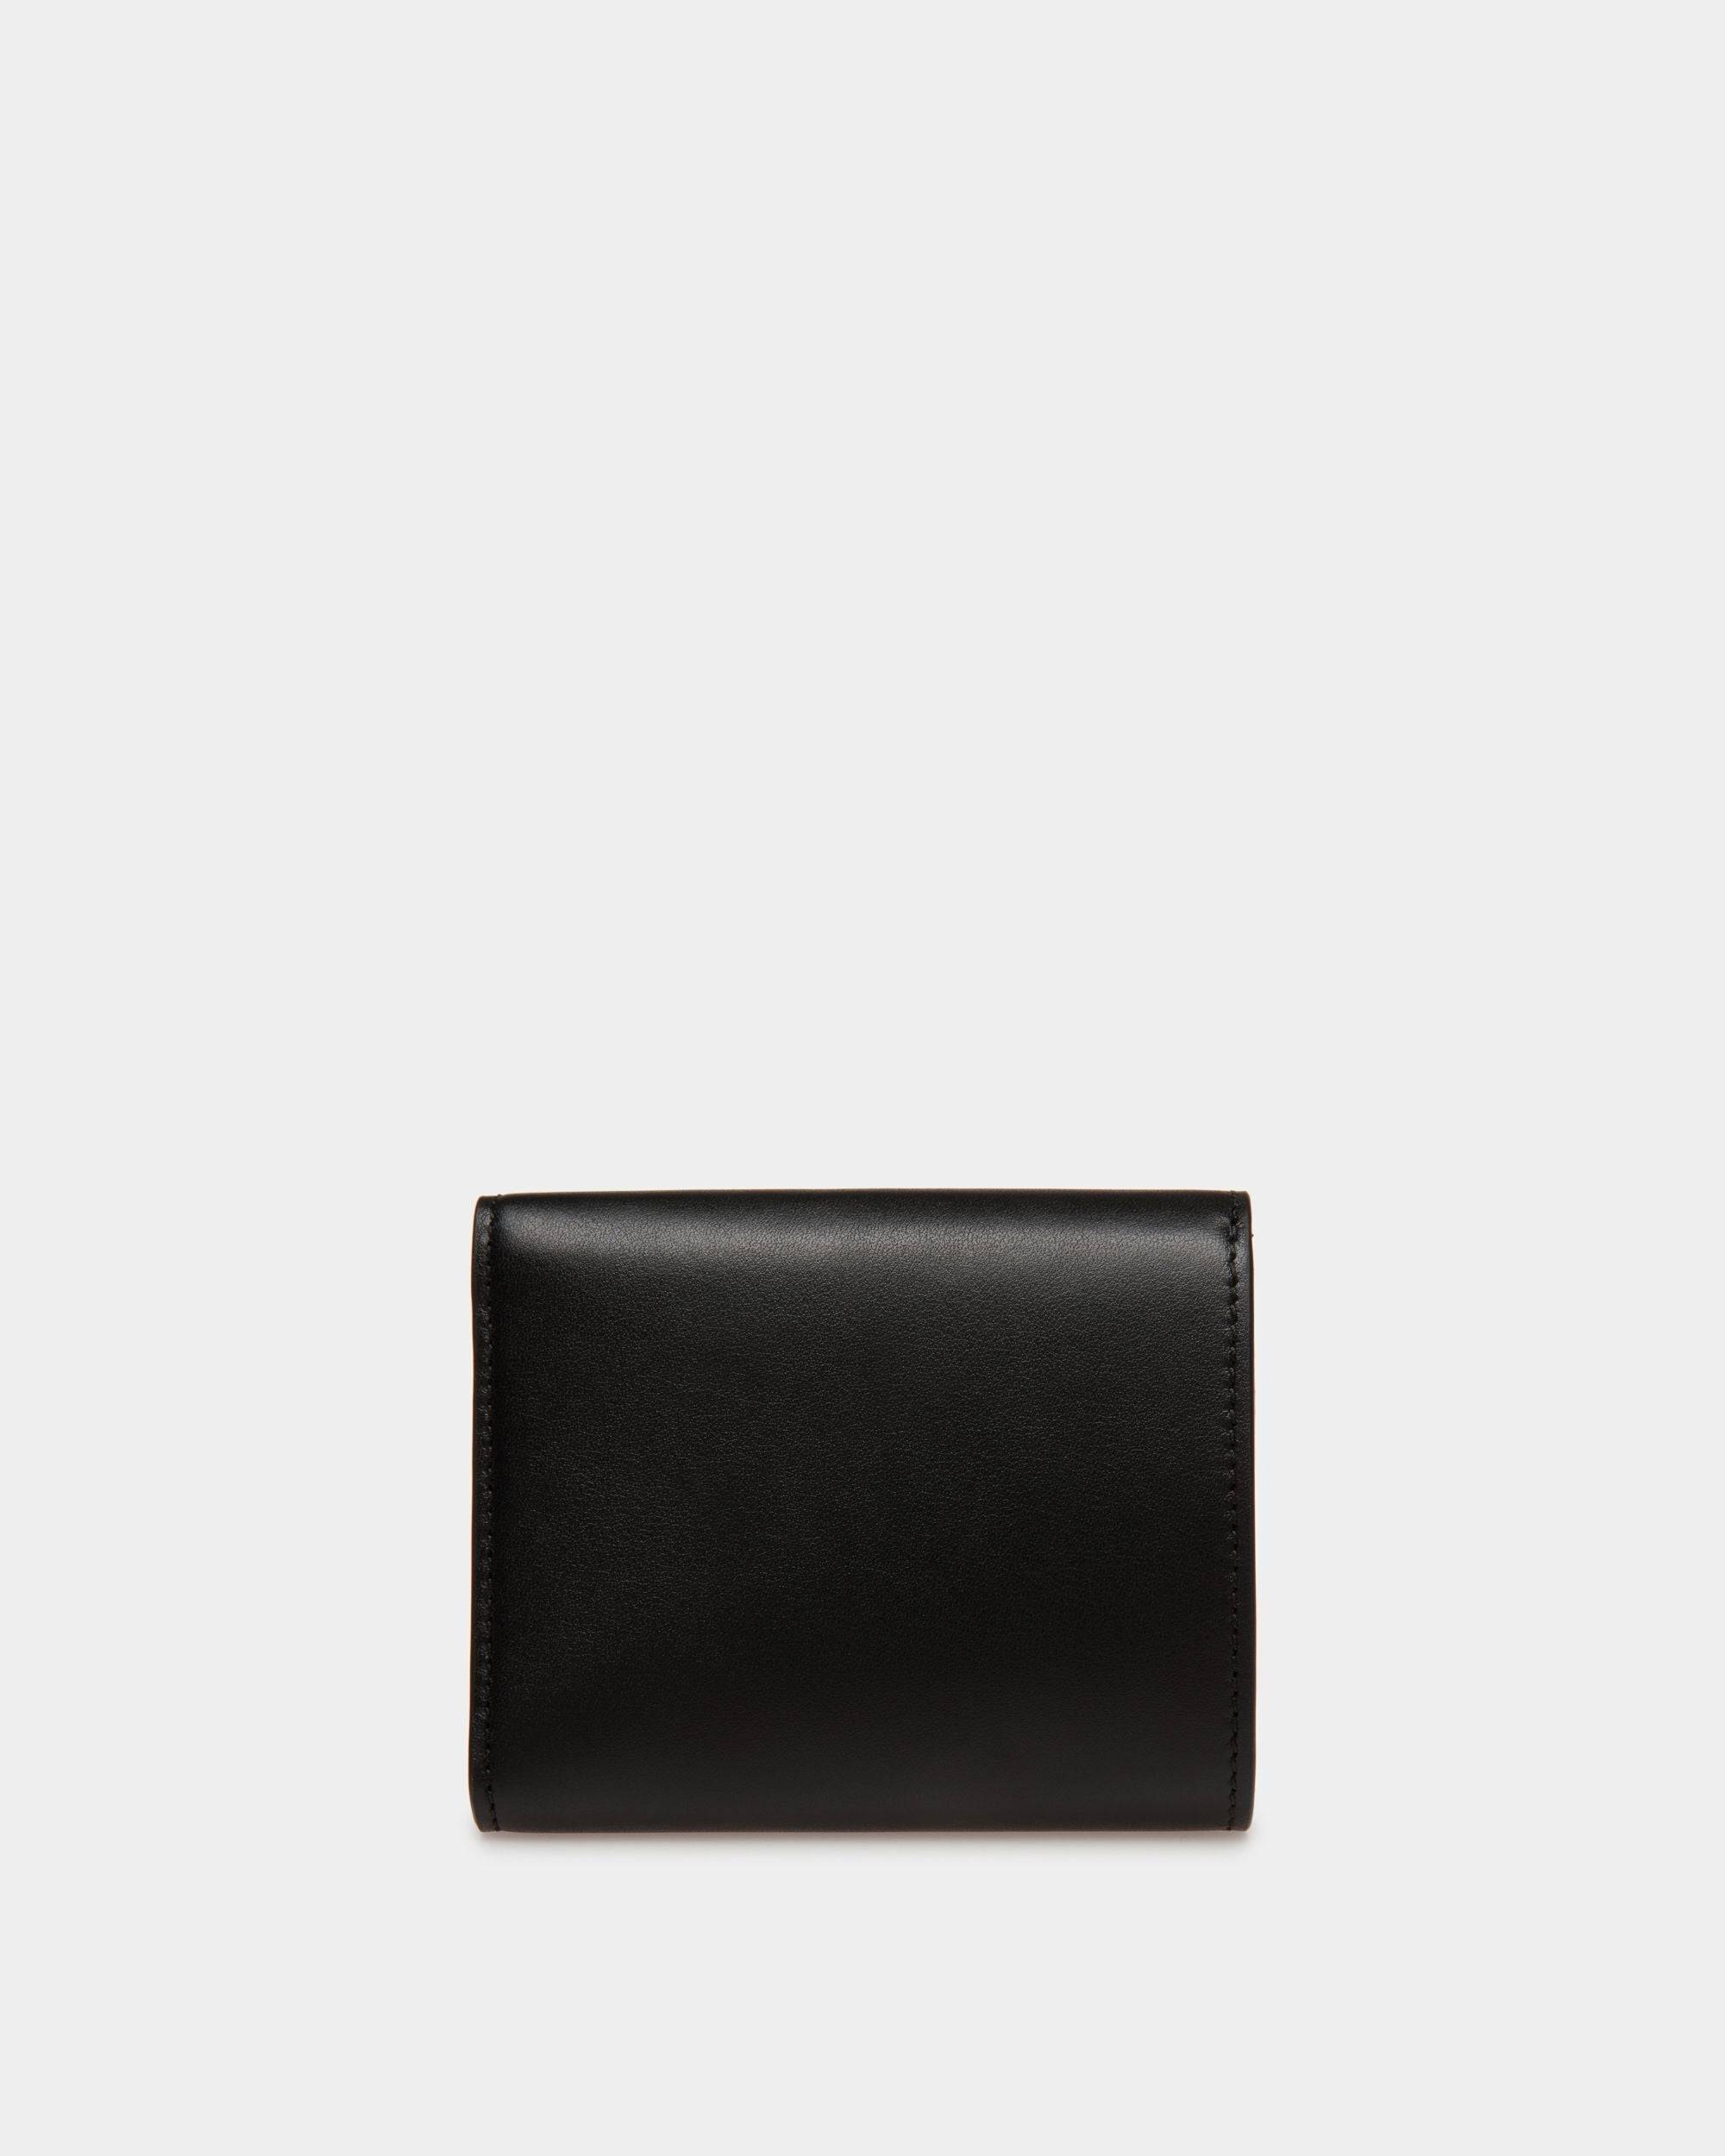 Tilt | Women's Wallet in Black Leather | Bally | Still Life Back